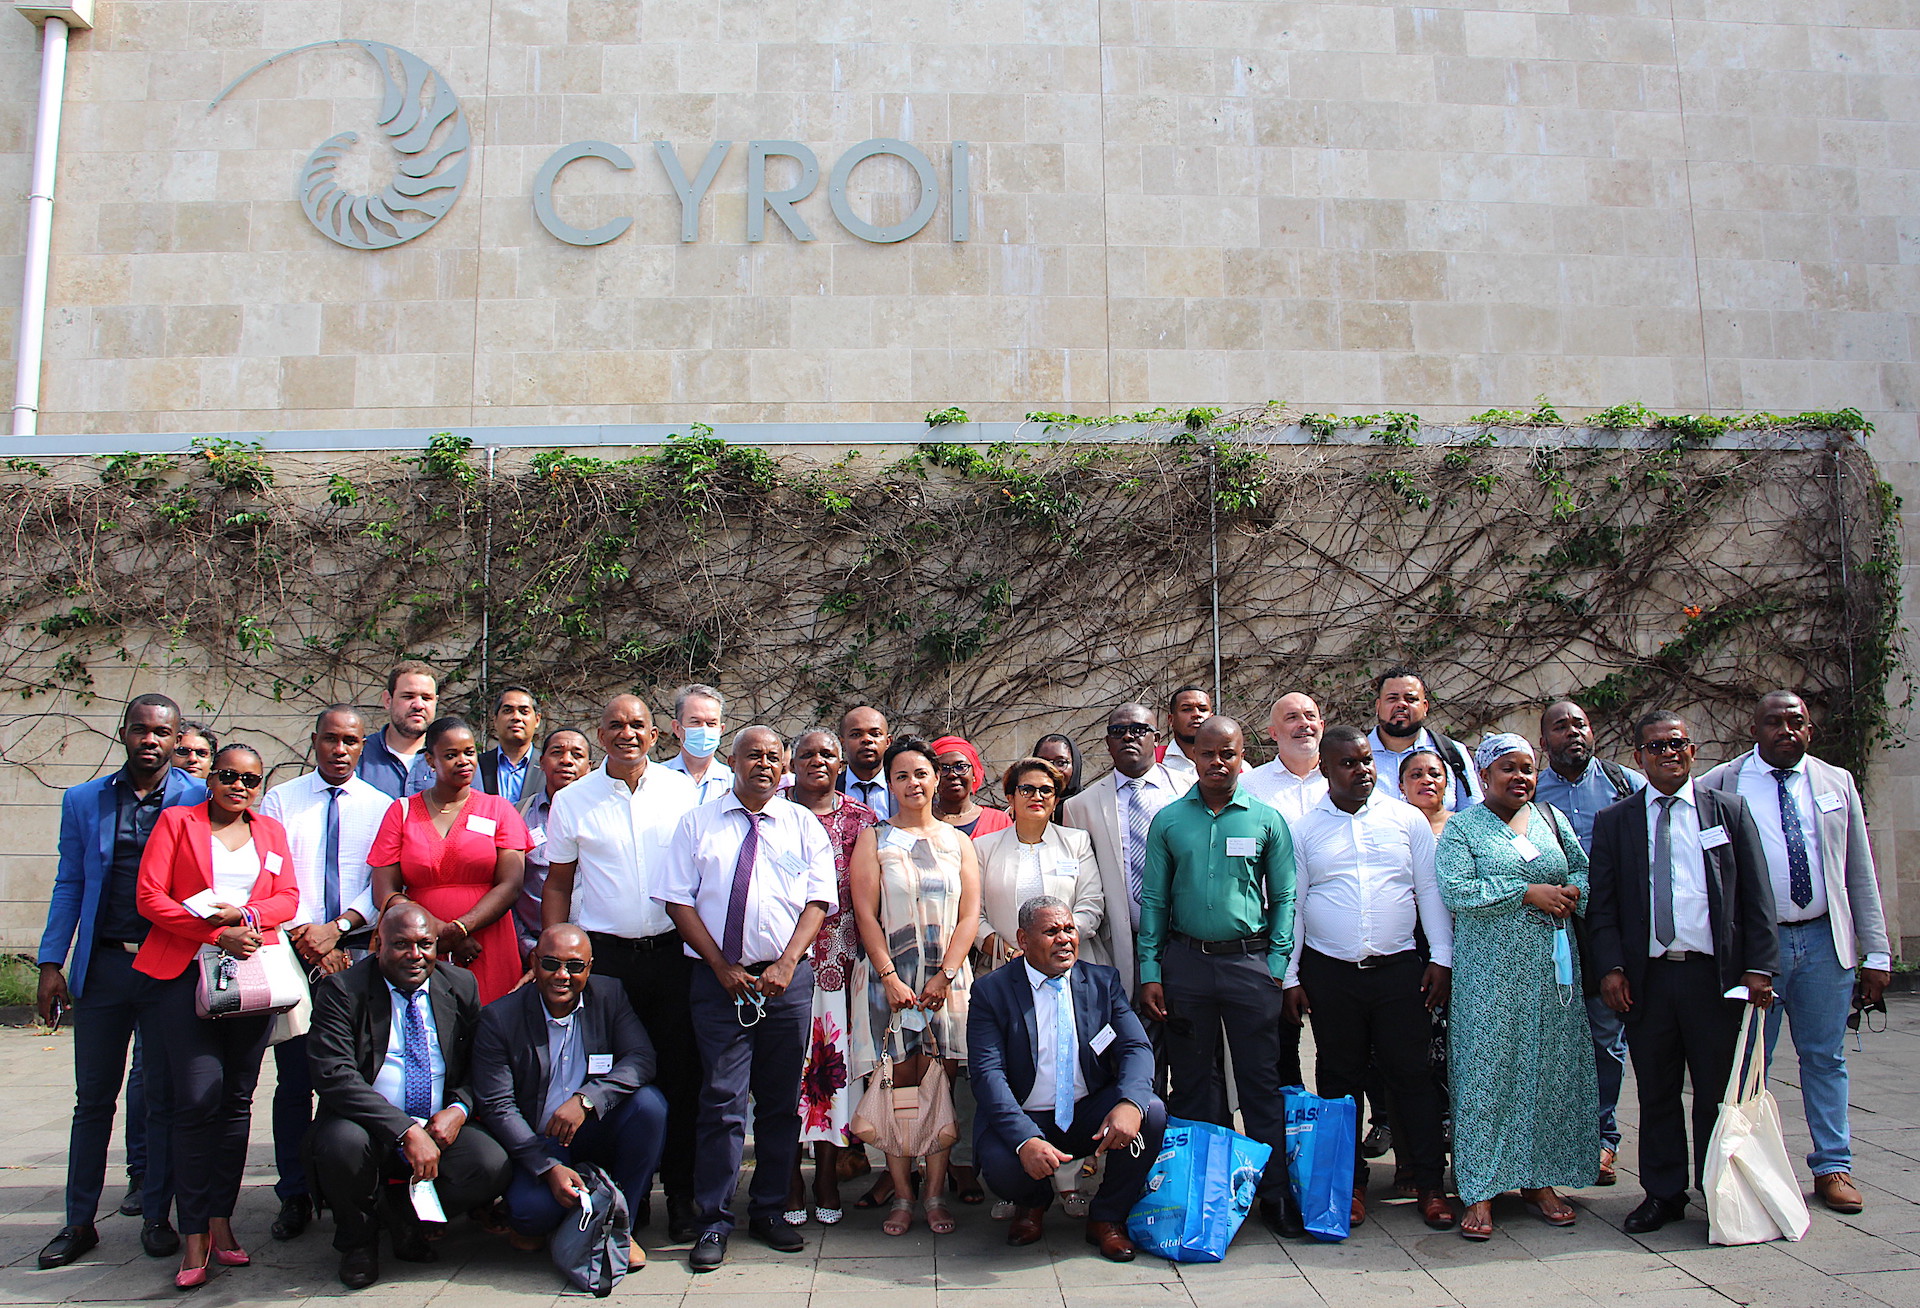 La visite du Cyroi a suscité un gros intérêt de la part de nos amis mahorais et malgaches